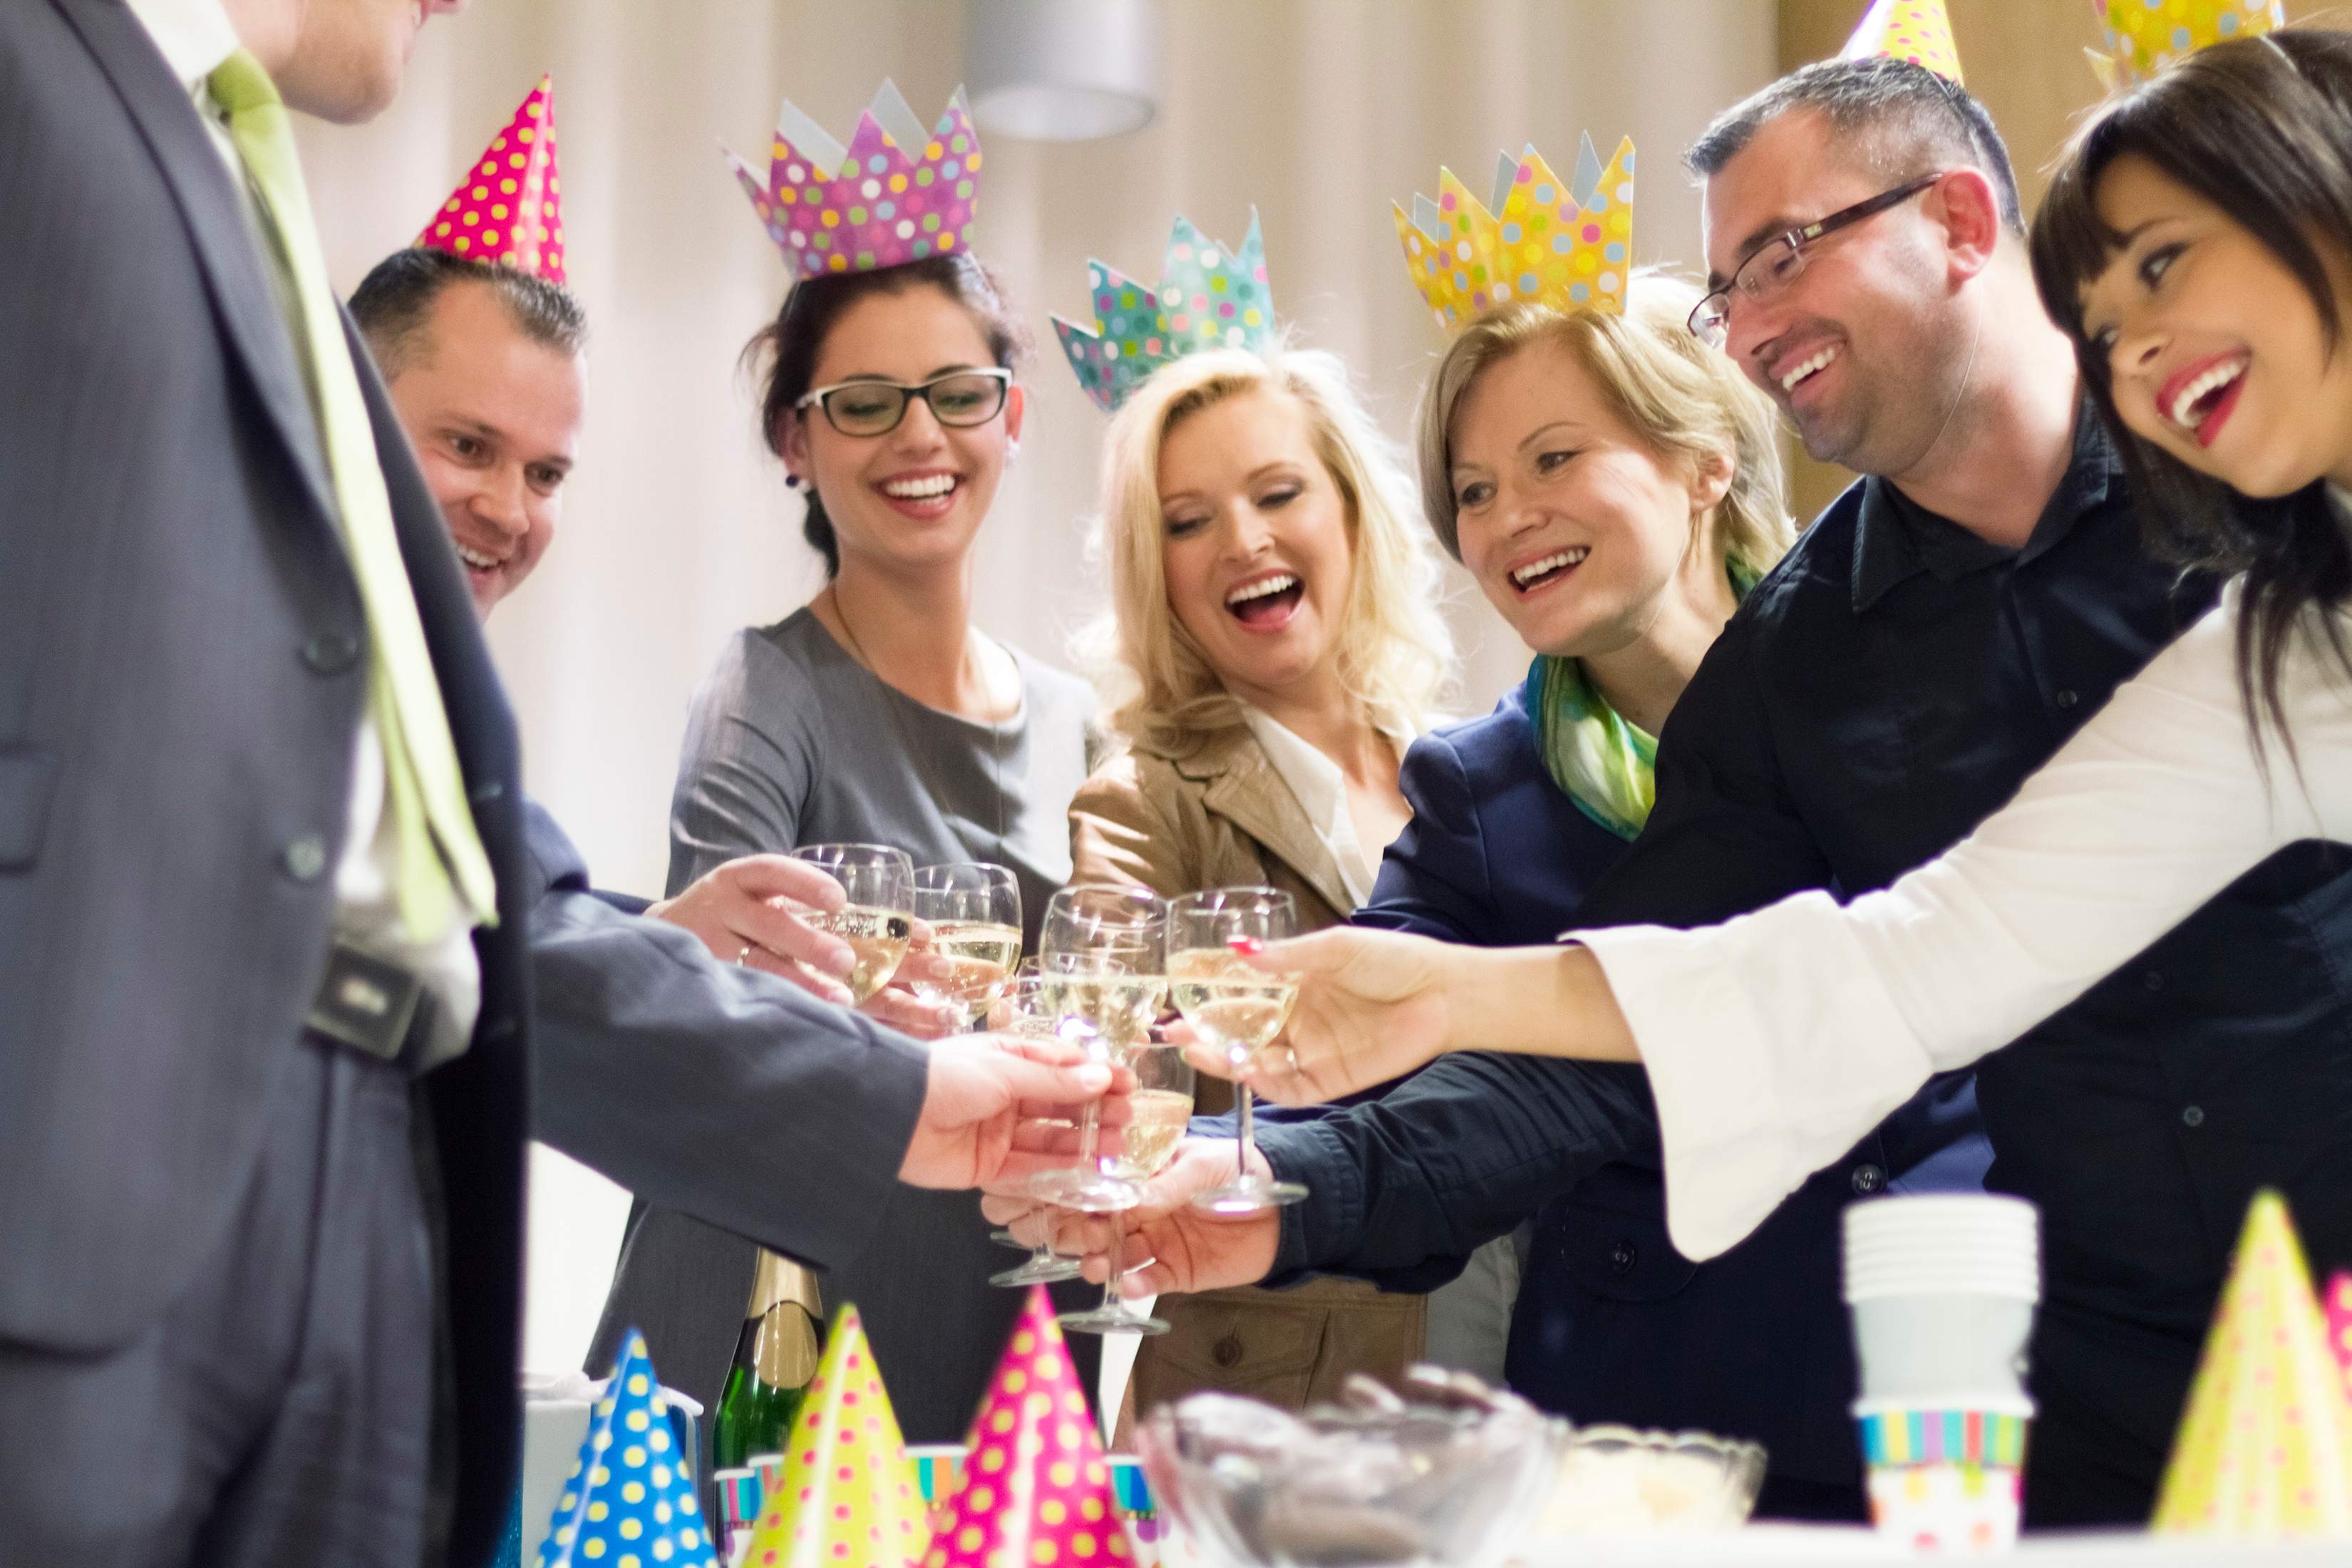 Организация дня рождения в ресторане: правила и идеи, которые помогут отметить праздник незабываемо